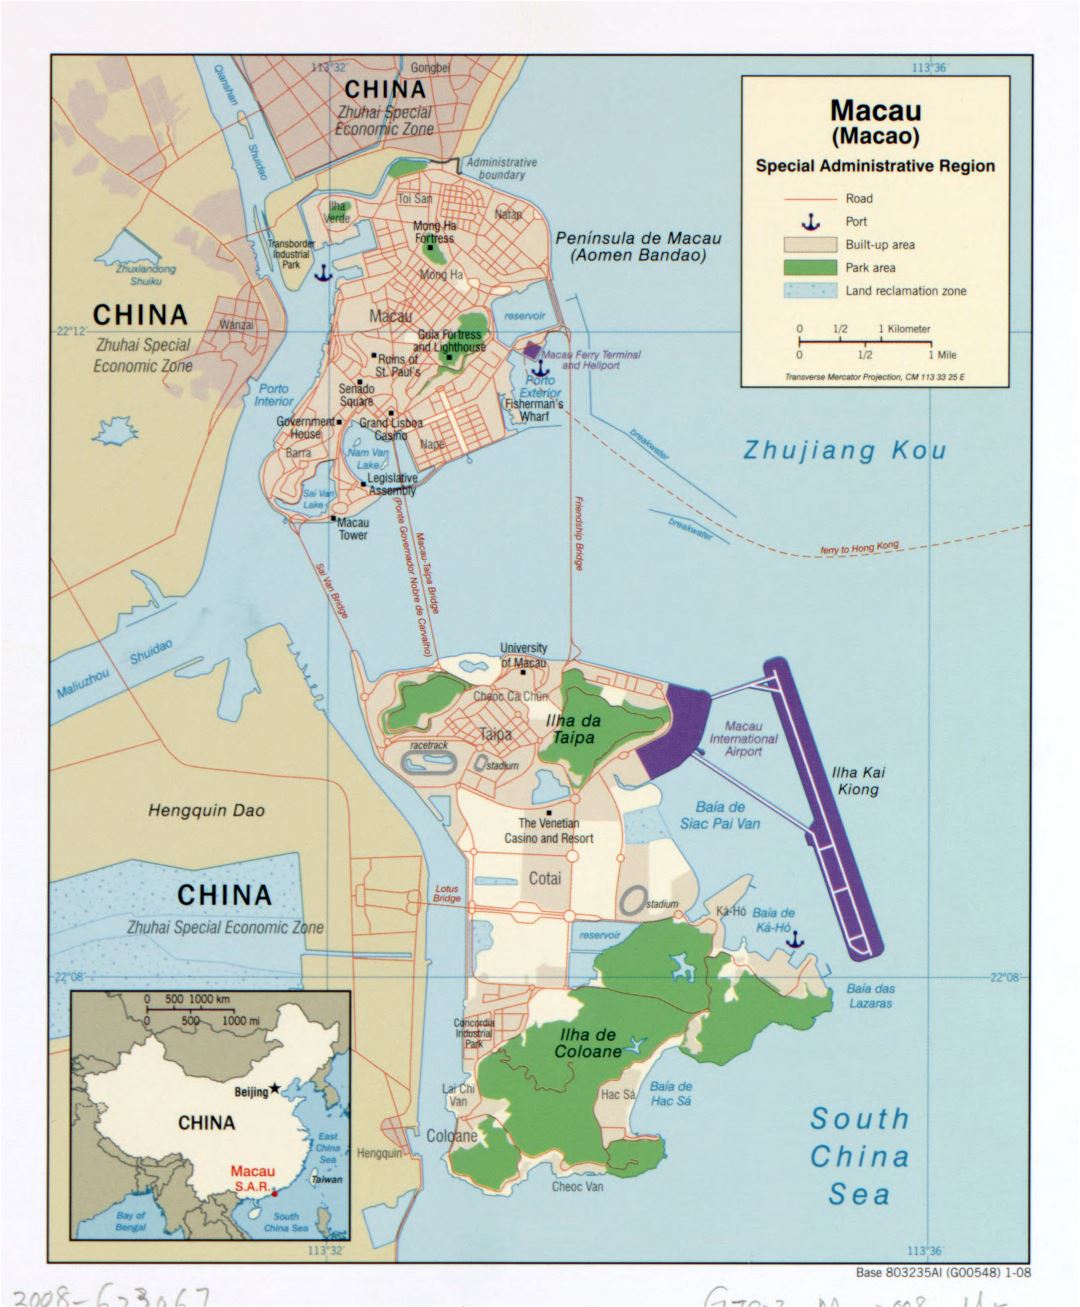 Grande detallado mapa político de Macao con carreteras, puertos y otras marcas - 2008